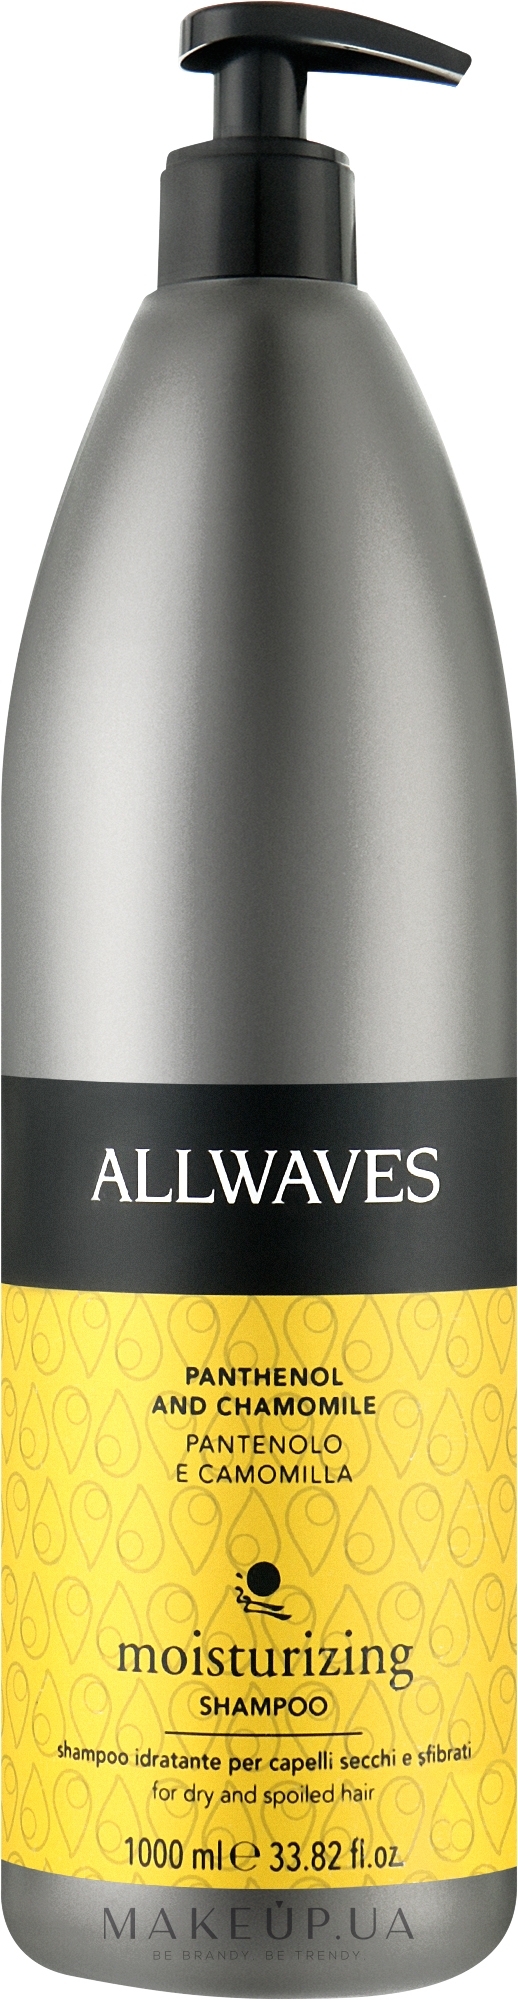 Зволожувальний шампунь для волосся - Allwaves Idratante Moisturizing Shampoo — фото 1000ml